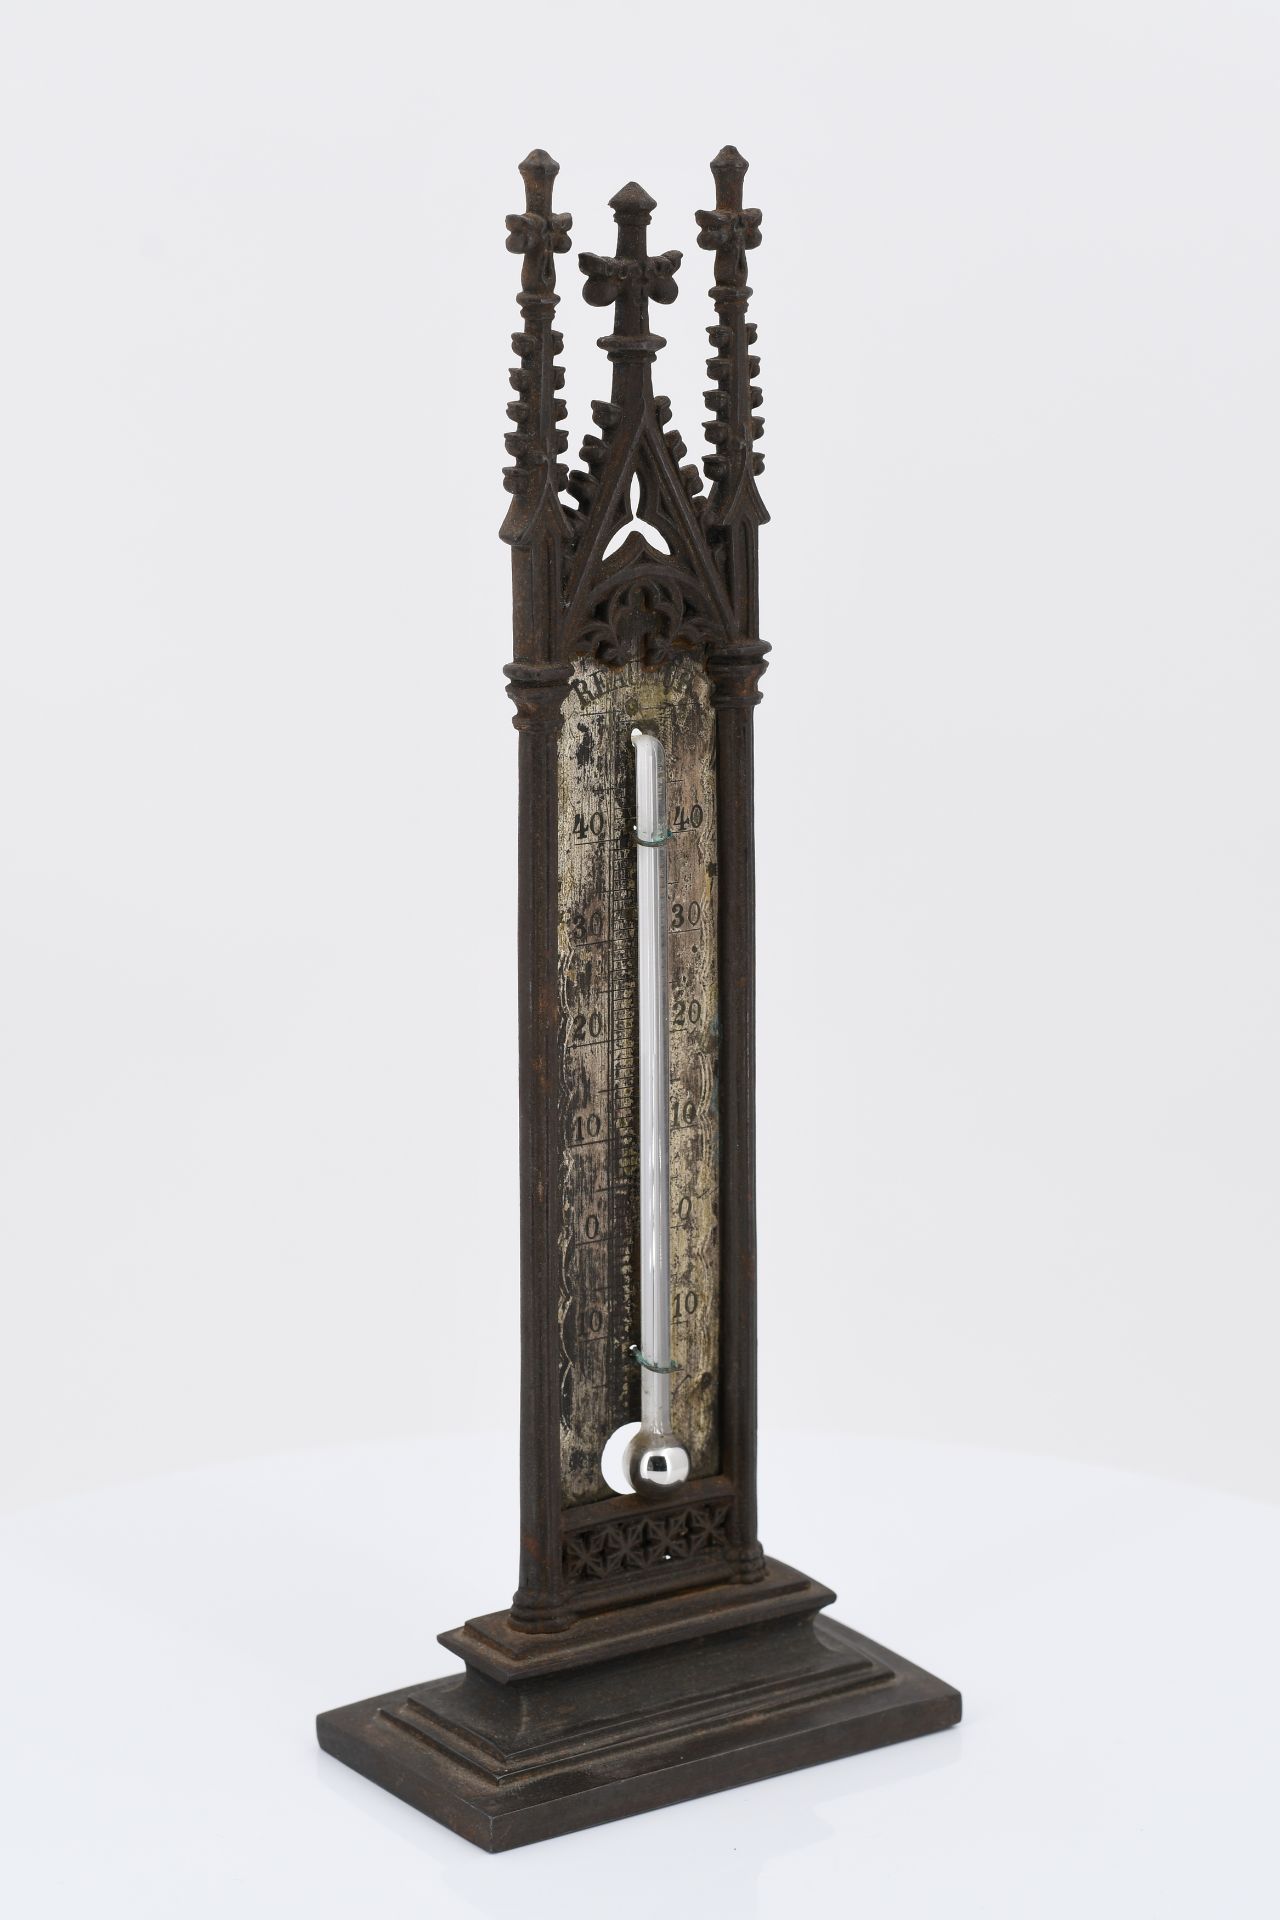 Tischthermometer mit gotischen Architekturelementen - Image 4 of 5